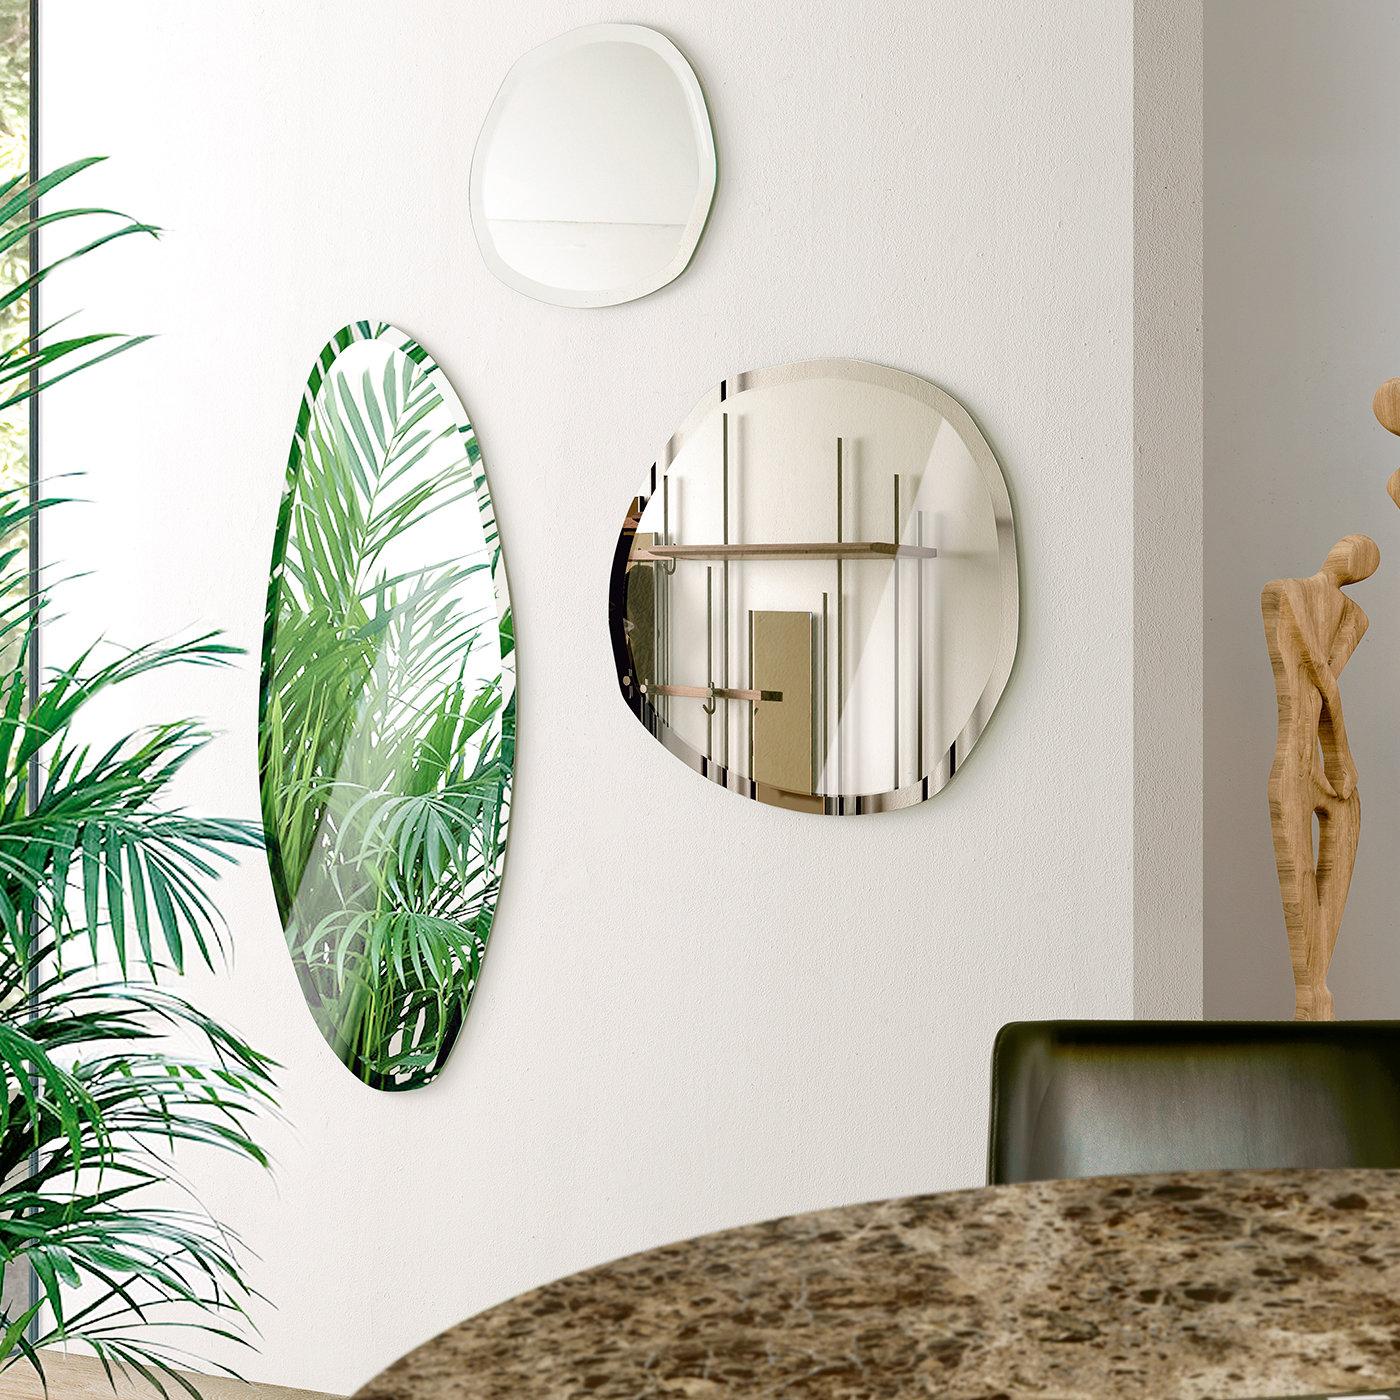 Évoquant de manière suggestive l'allure de la pierre naturelle, ce miroir mural saisissant de Norberto-Decor est certainement un objet de décoration fonctionnel unique en son genre qui se distinguera dans tout intérieur moderne et raffiné. Le verre